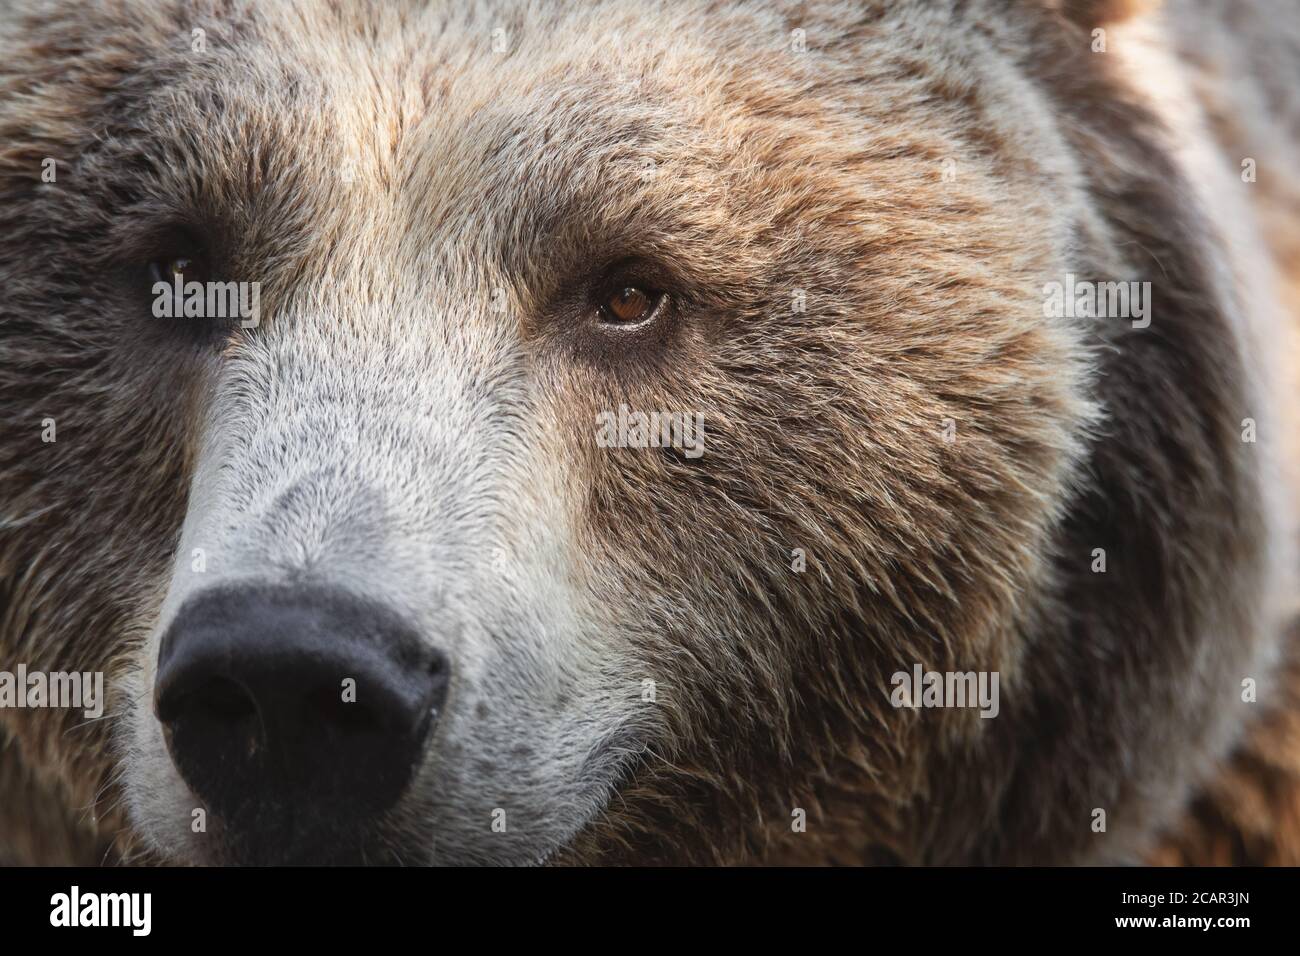 Nahaufnahme Gesicht Porträt eines männlichen Braunbären. Wir können die Augen-, Nase- und Fellstruktur sehen Stockfoto